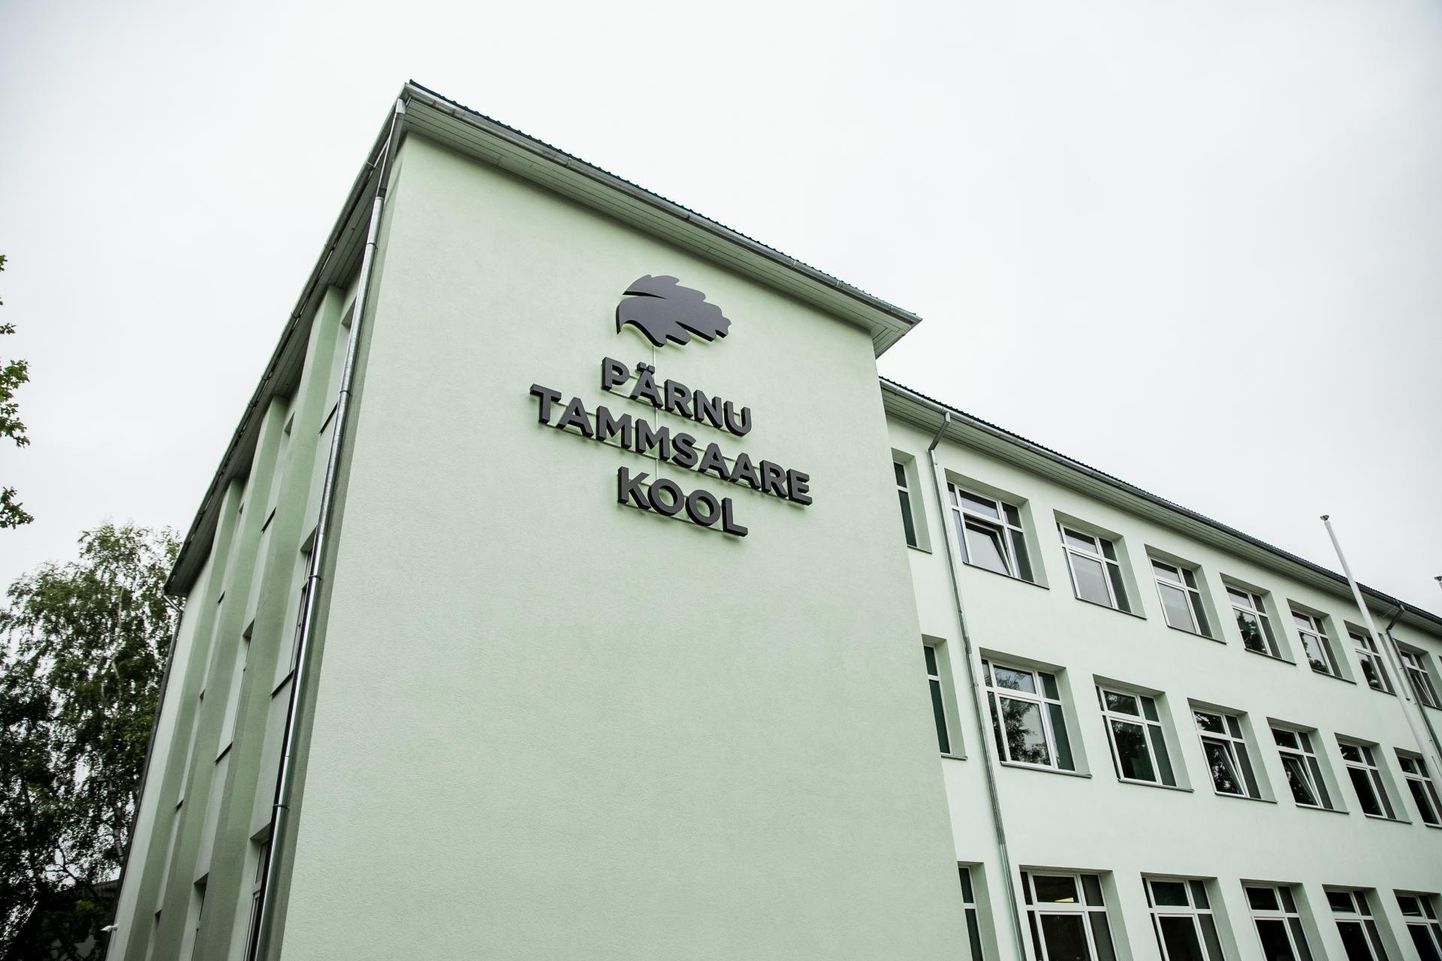 Üle poole Pärnu saabunud Uk­raina õpilastest on võtnud vastu Tammsaare kool